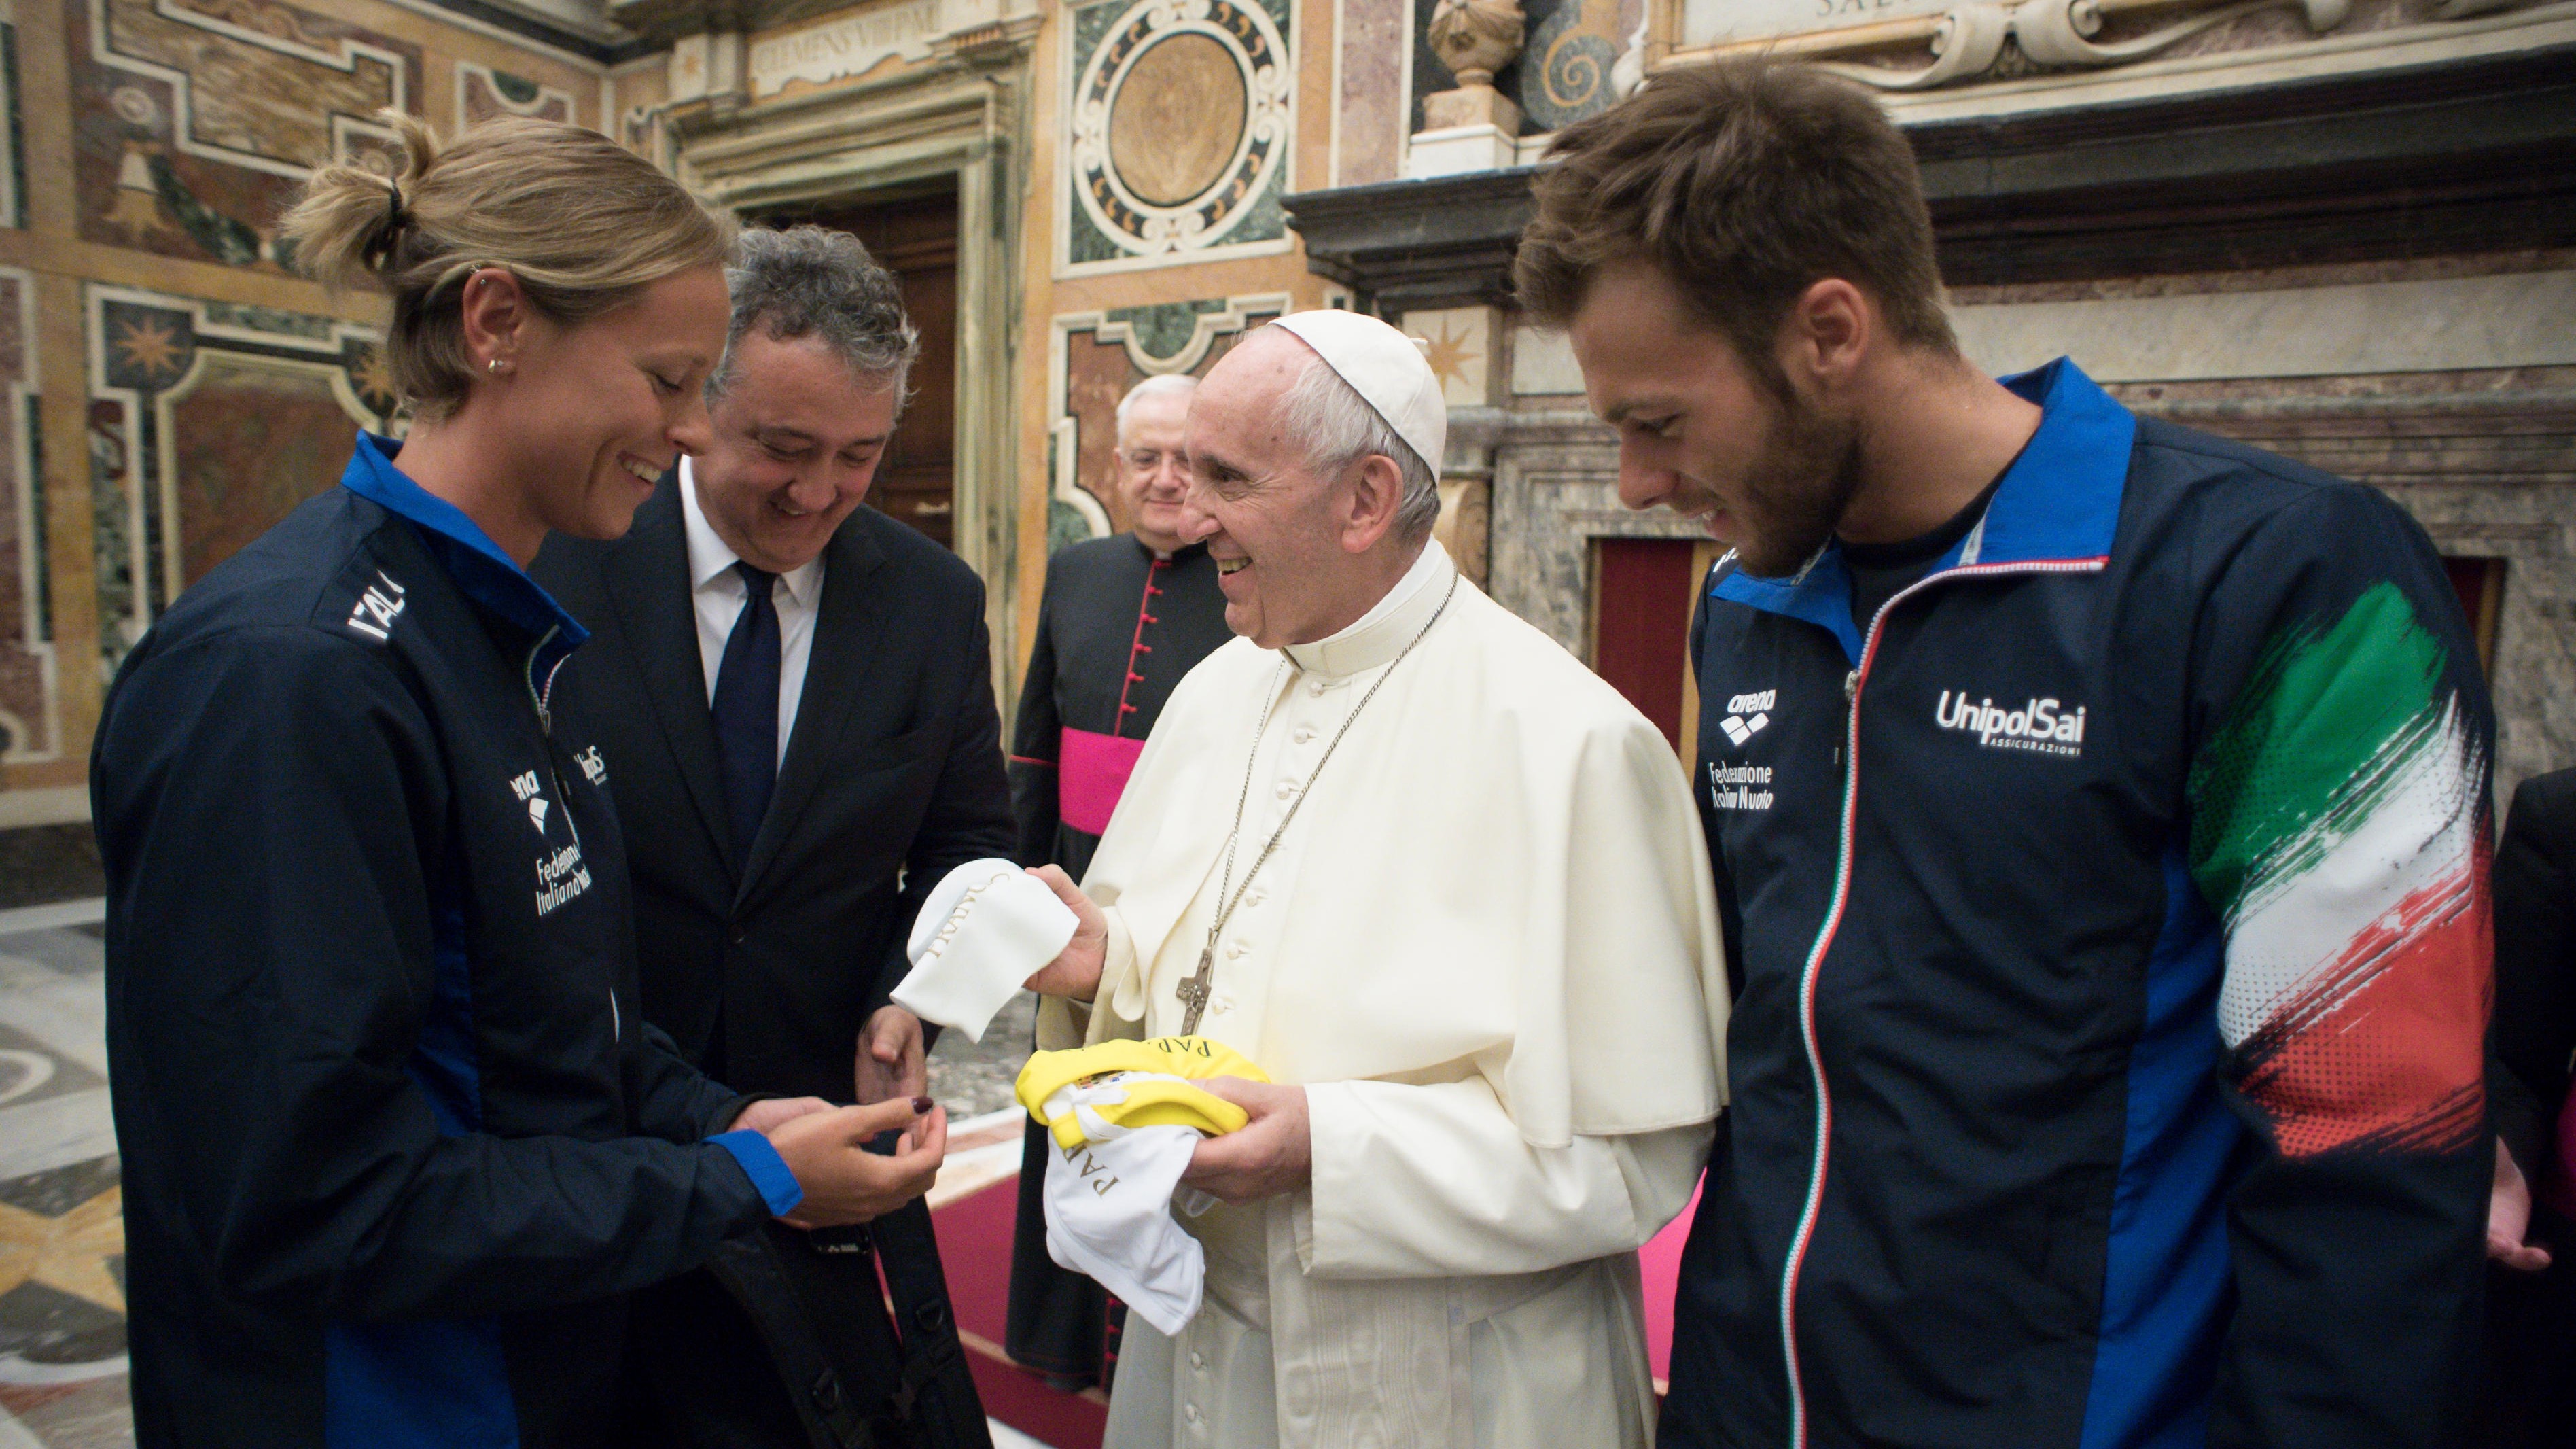 Nuoto, Papa Francesco riceve atleti Sette Colli: L’acqua è vita